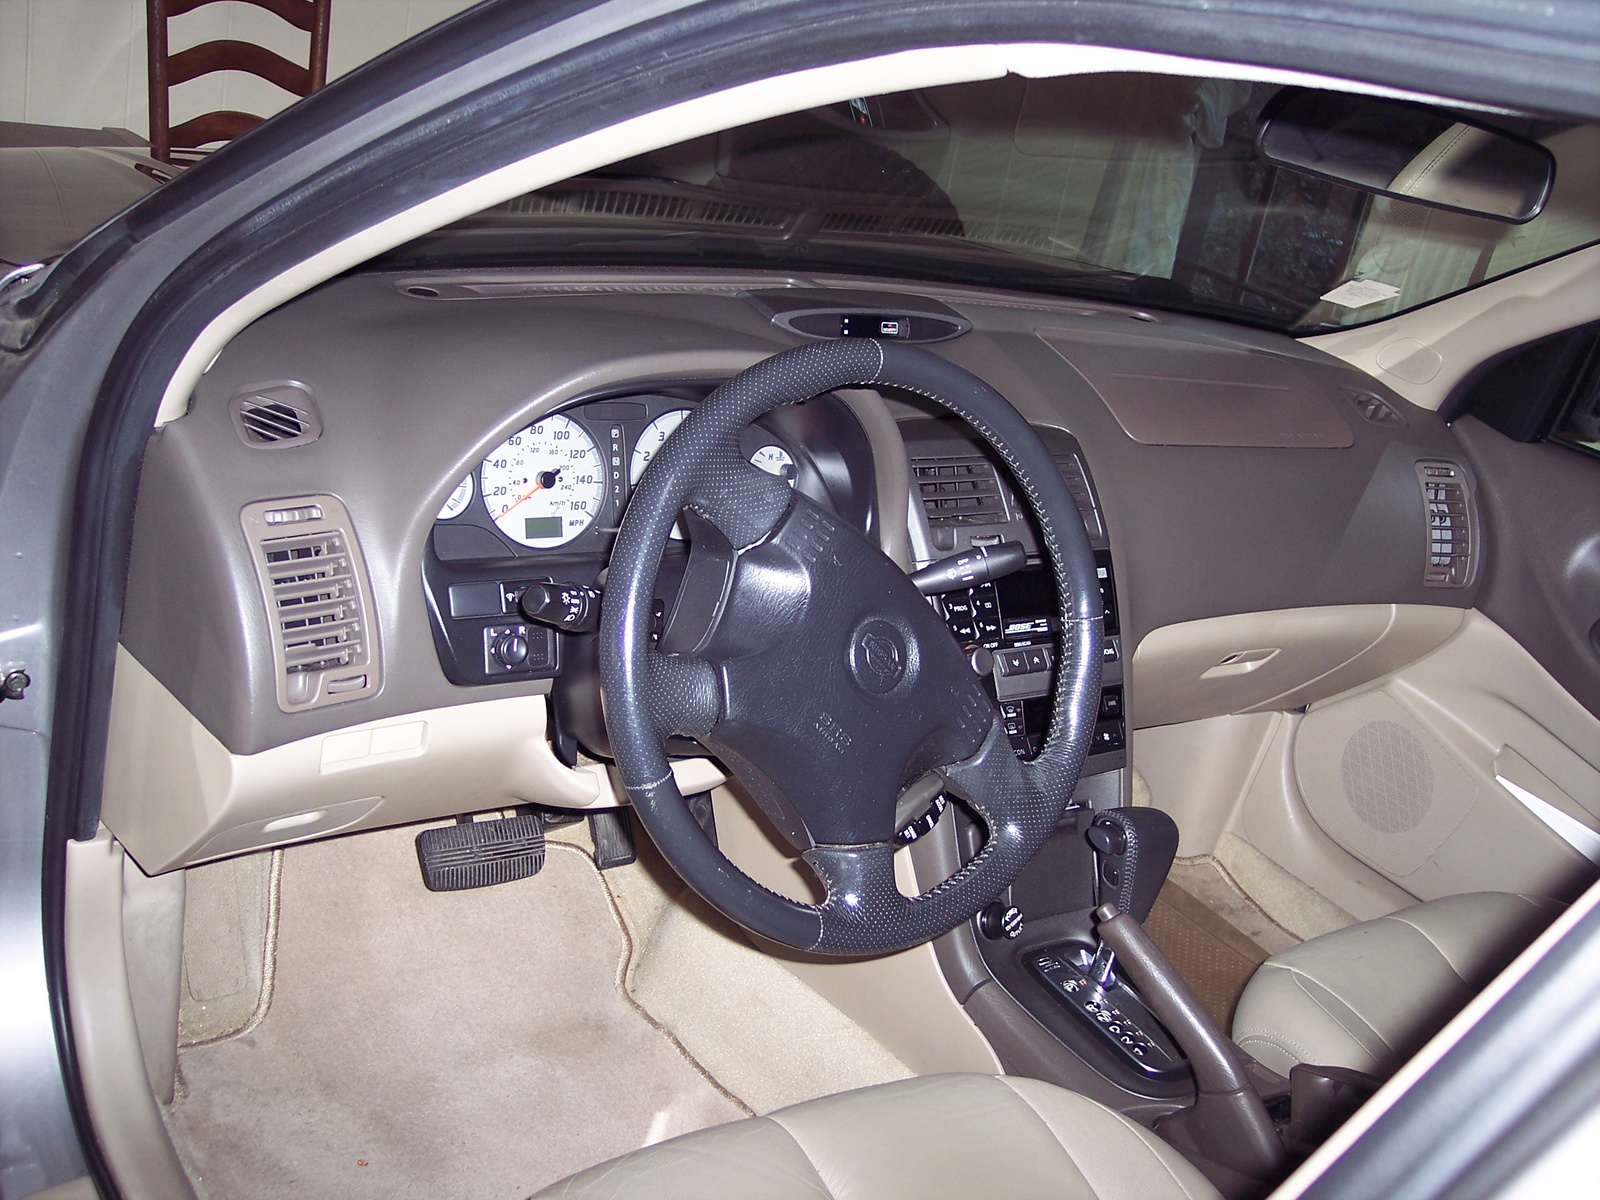 2000 Nissan maxima interior pictures #9